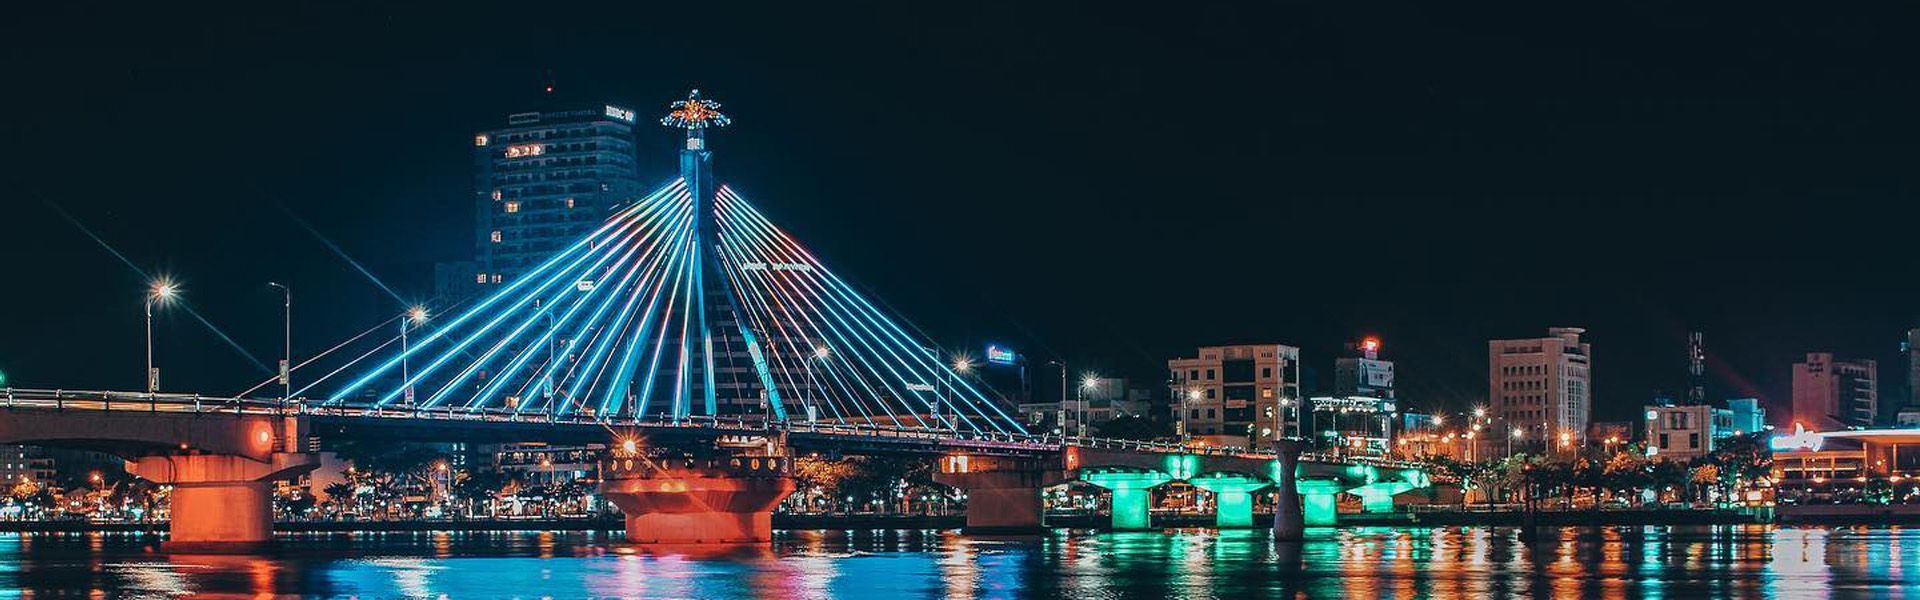 Chiêm ngưỡng cầu sông Hàn: biểu tượng tự hào của người dân Đà Nẵng